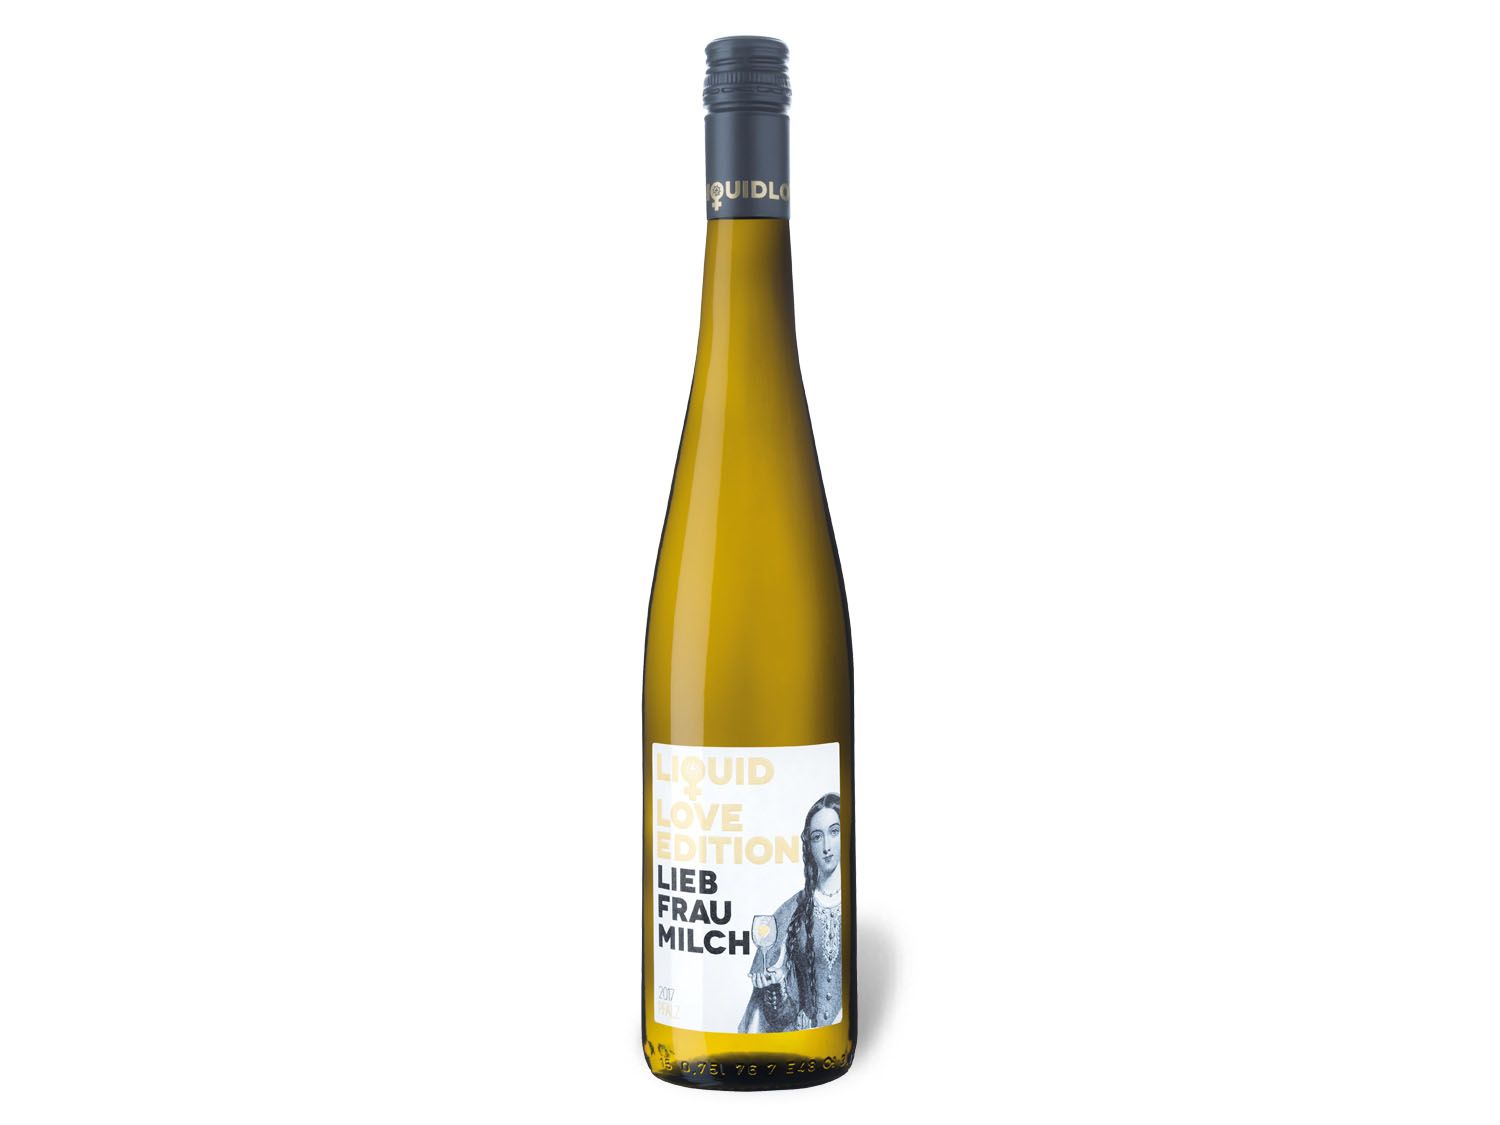 Hammel Liebfraumilch Pfalz lieblich, Weißwein 2021